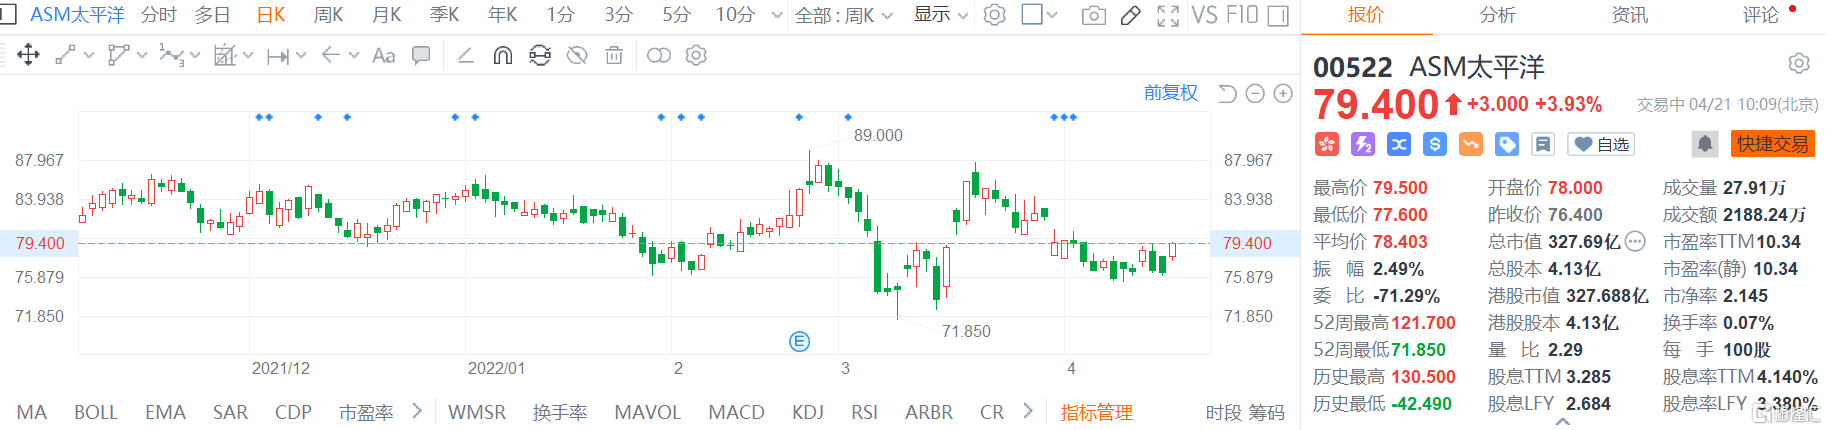 ASM太平洋(0522.HK)高开高走 现报79.4港元涨幅3.9%